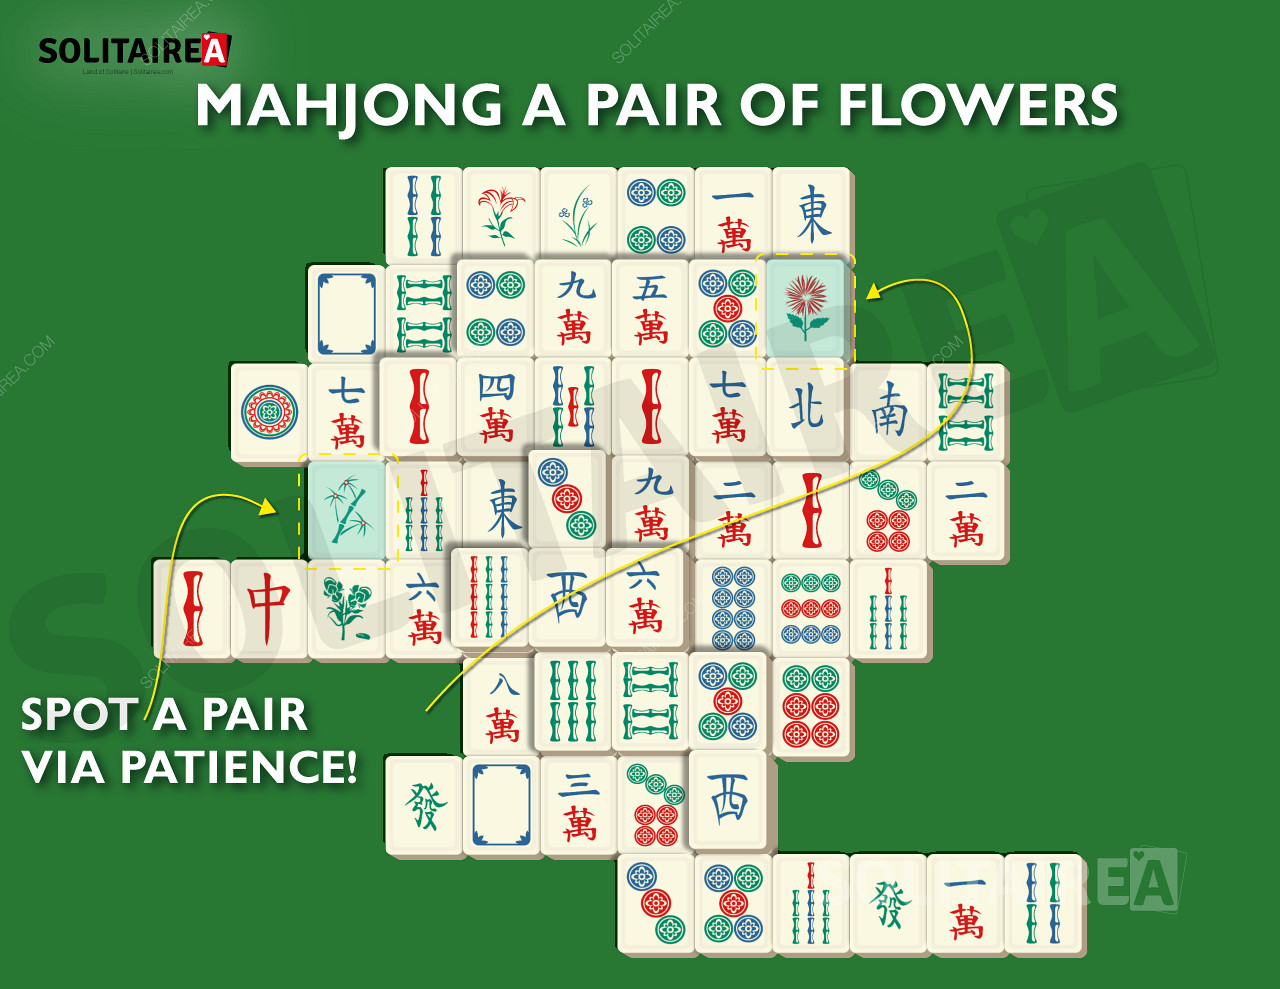 Imagen del Solitario Mahjong mostrando una selección típica de fichas.